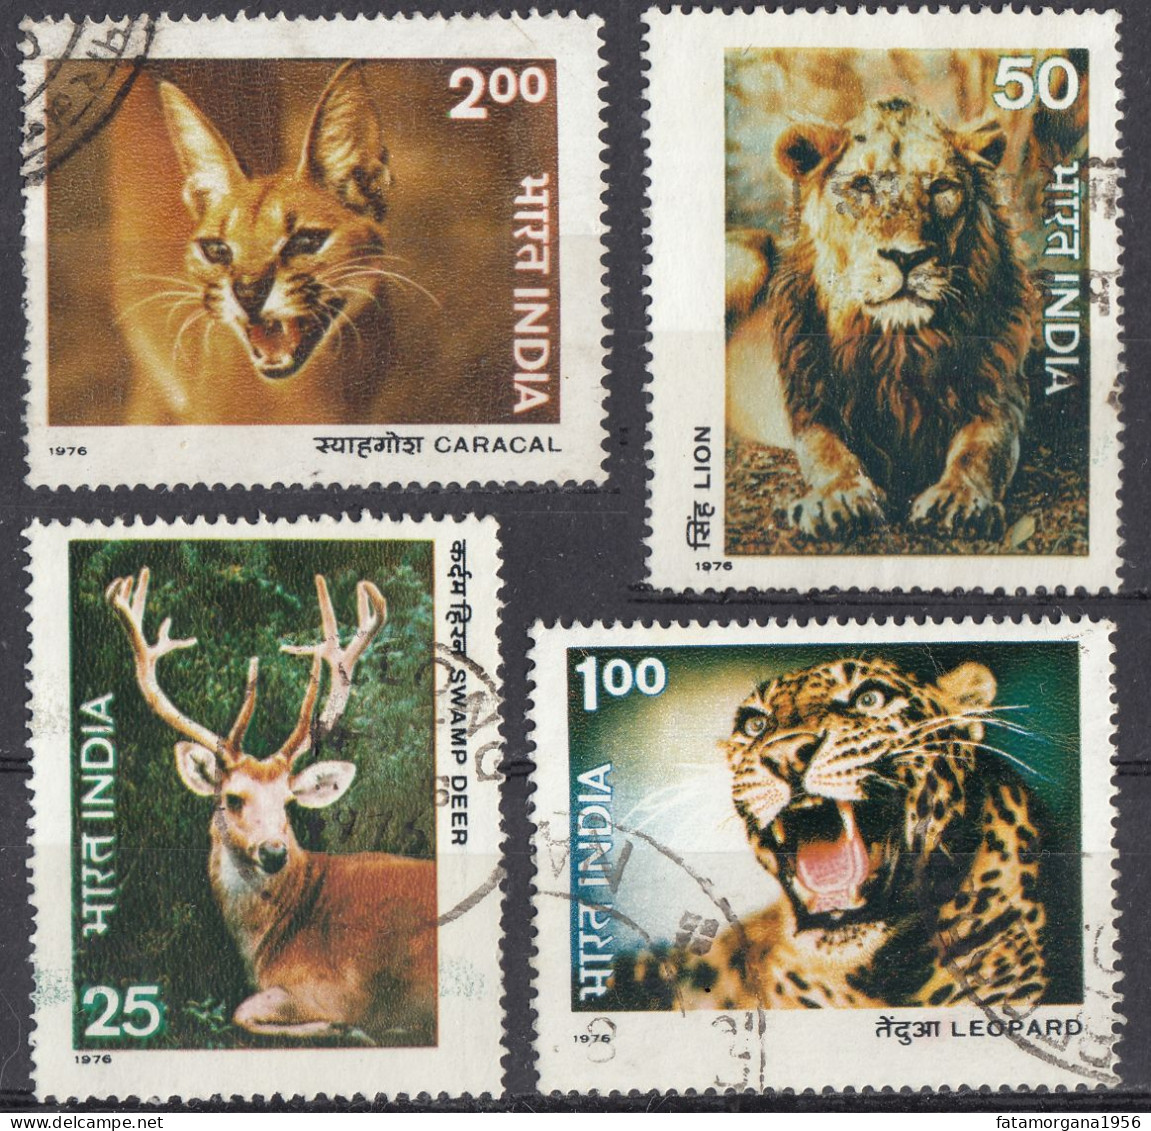 INDIA - 1976 - Serie Completa Usata Di 4 Valori: Yvert 494/497, Come Da Immagine. - Used Stamps